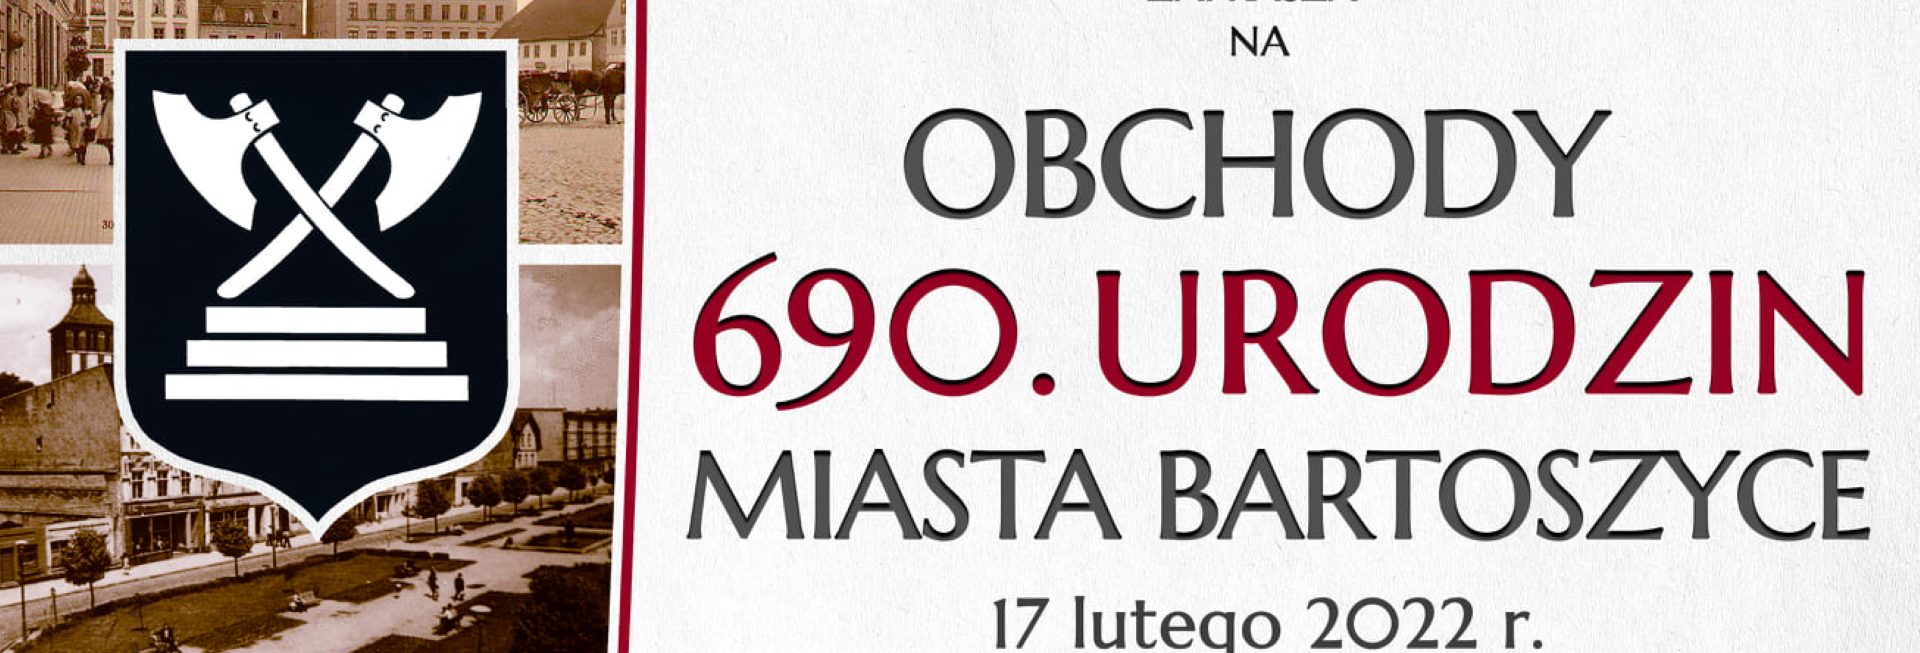 Plakat graficzny zapraszający do Bartoszyc na Obchodach 690. urodzin Miasta Bartoszyce 2022.